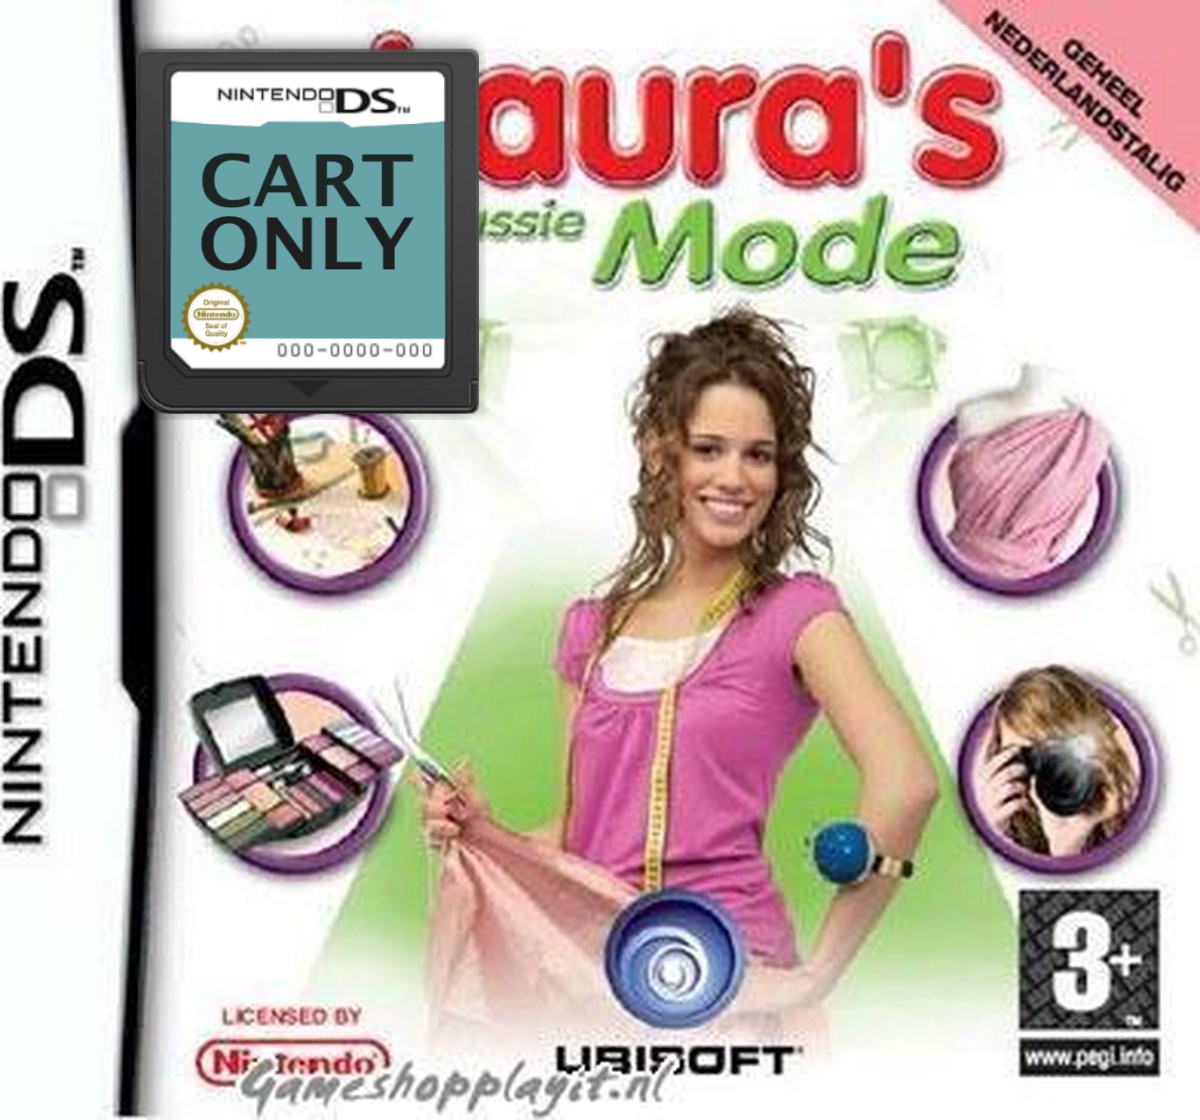 Laura's Passie Mode - Cart Only Kopen | Nintendo DS Games